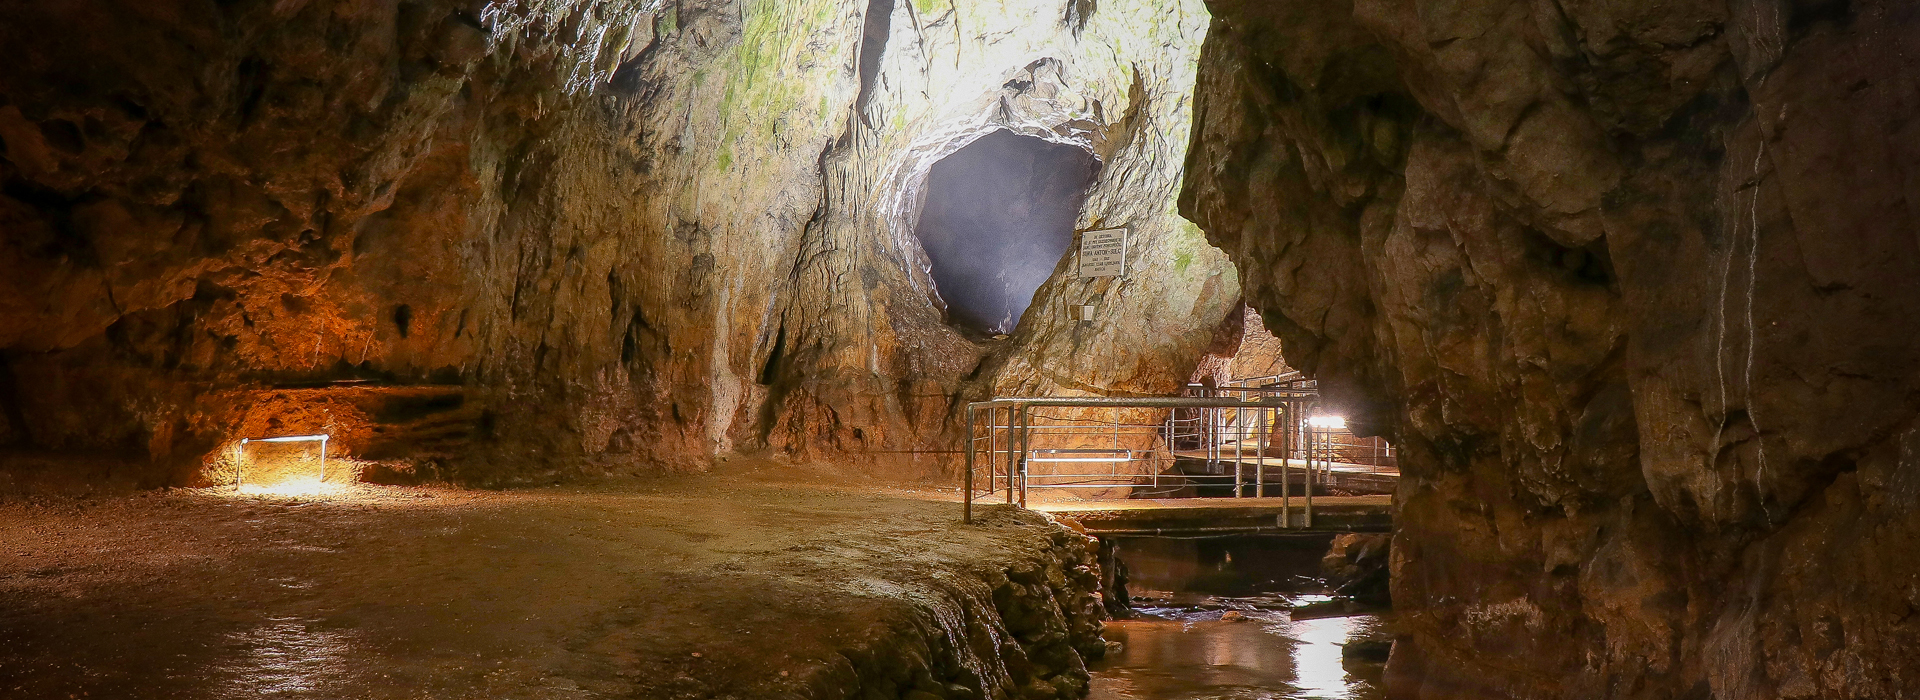 Jama Pekel in njen podzemni svet, kjer se voda med kapniki pretaka v slapovih 